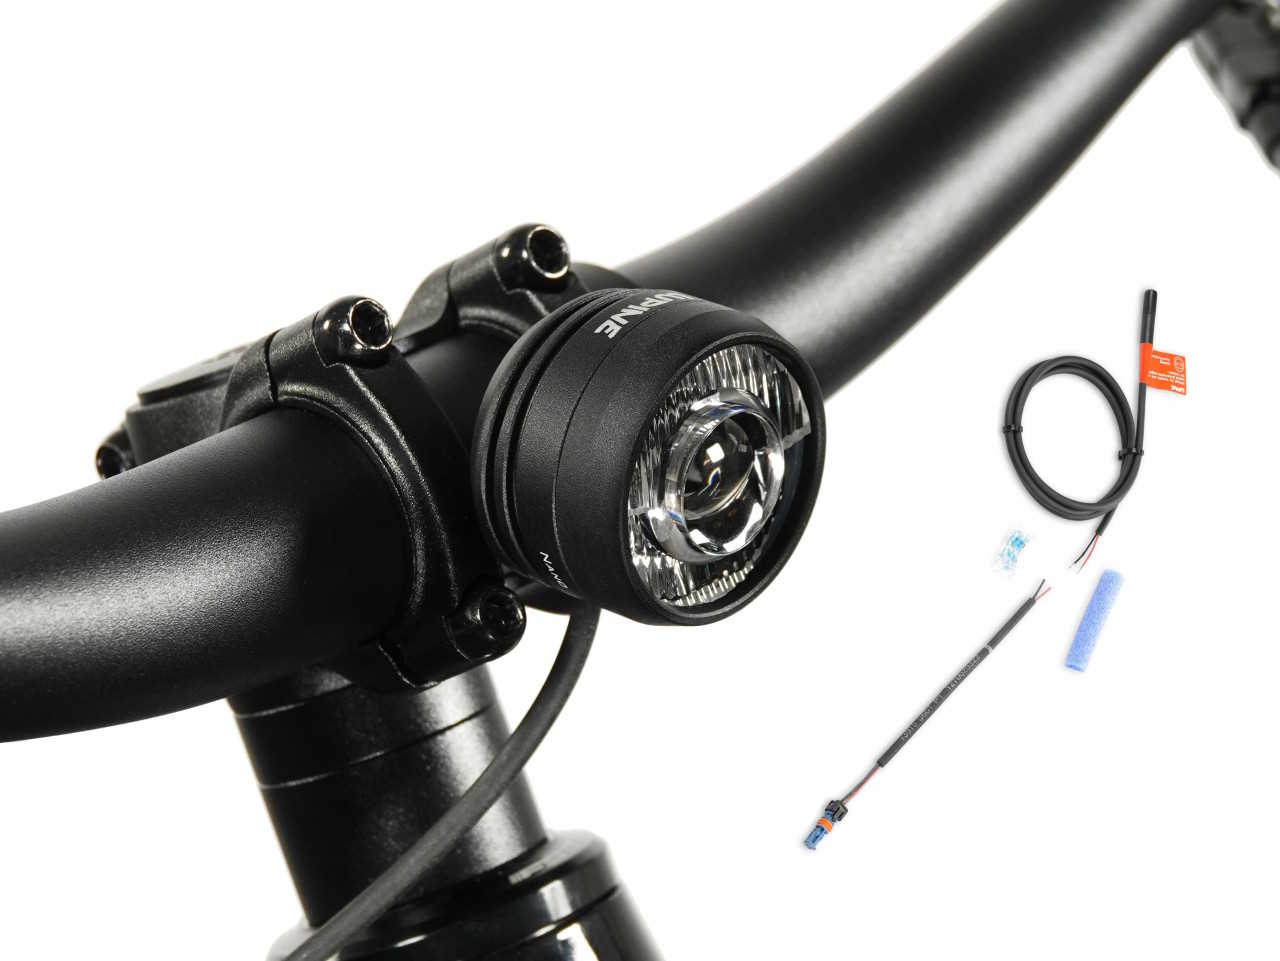 Produktbild von Lupine SL Nano für E-Bikes mit Bosch Motor, E-Bike Beleuchtung mit 900 Lumen Fernlicht, Lenkerhalter 35mm + Bluetooth Fernbedienung